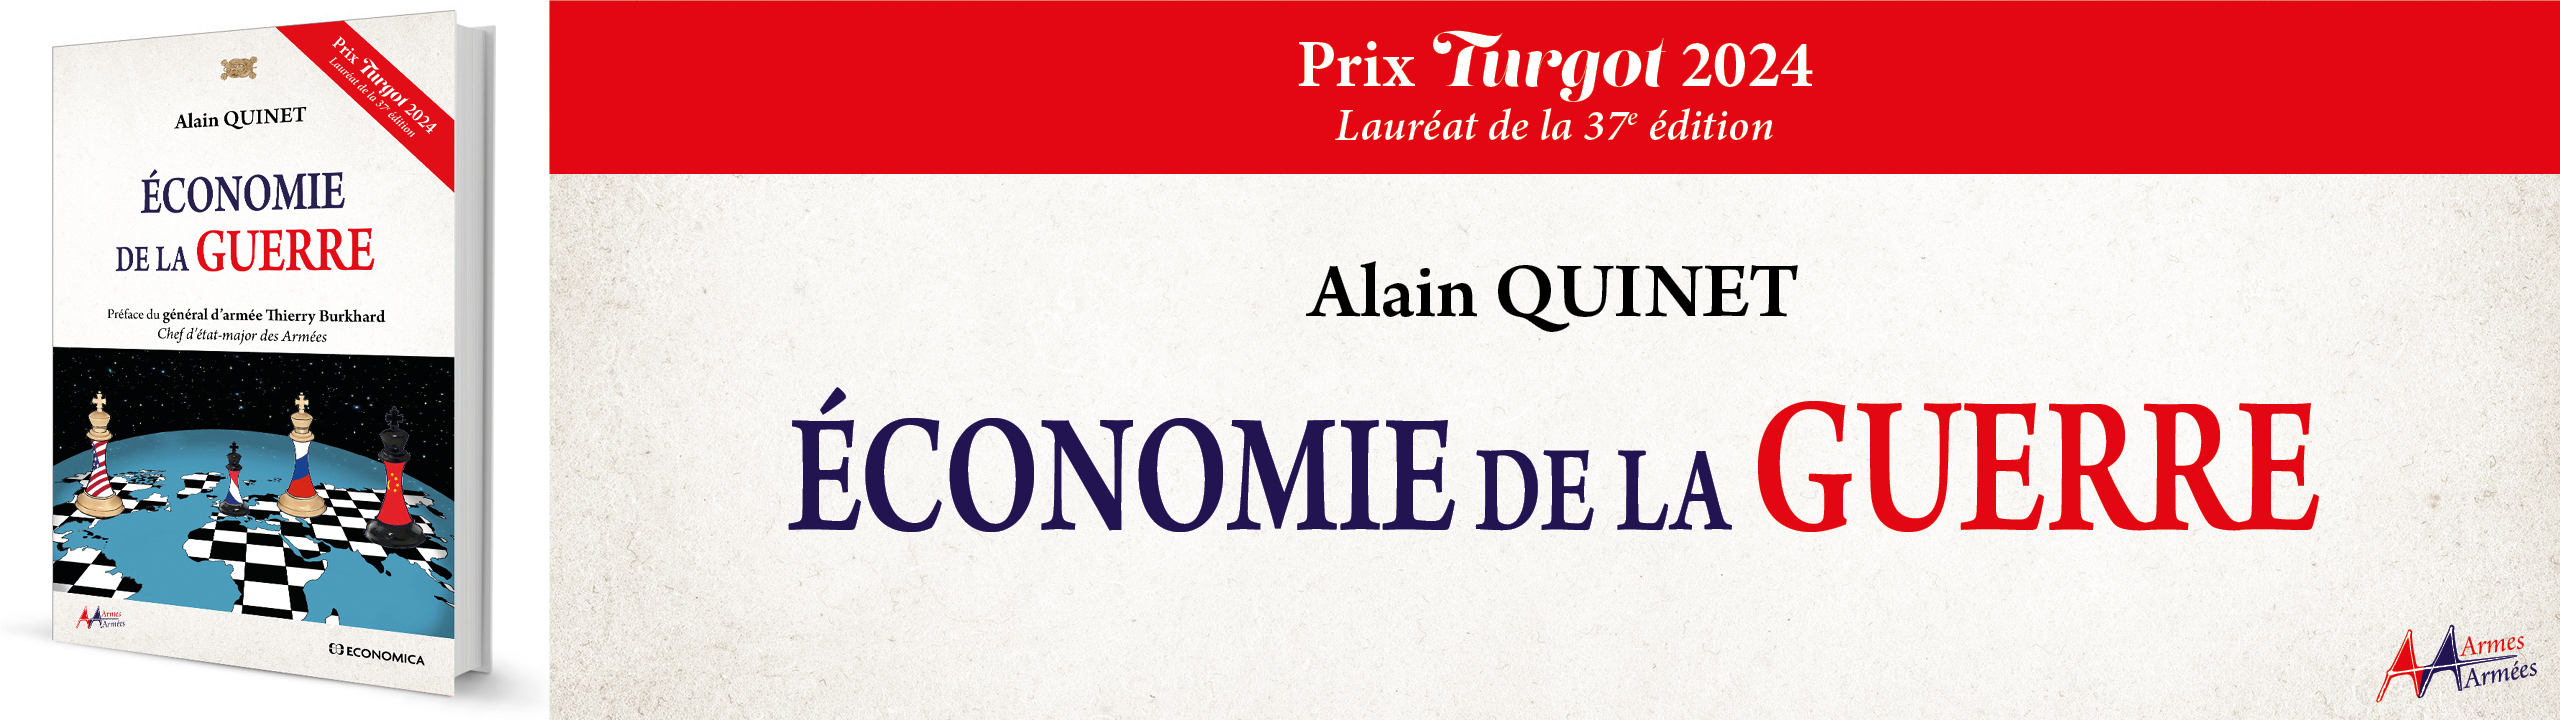 conomie de la guerre - 37e Prix turgot - Alain Quinet